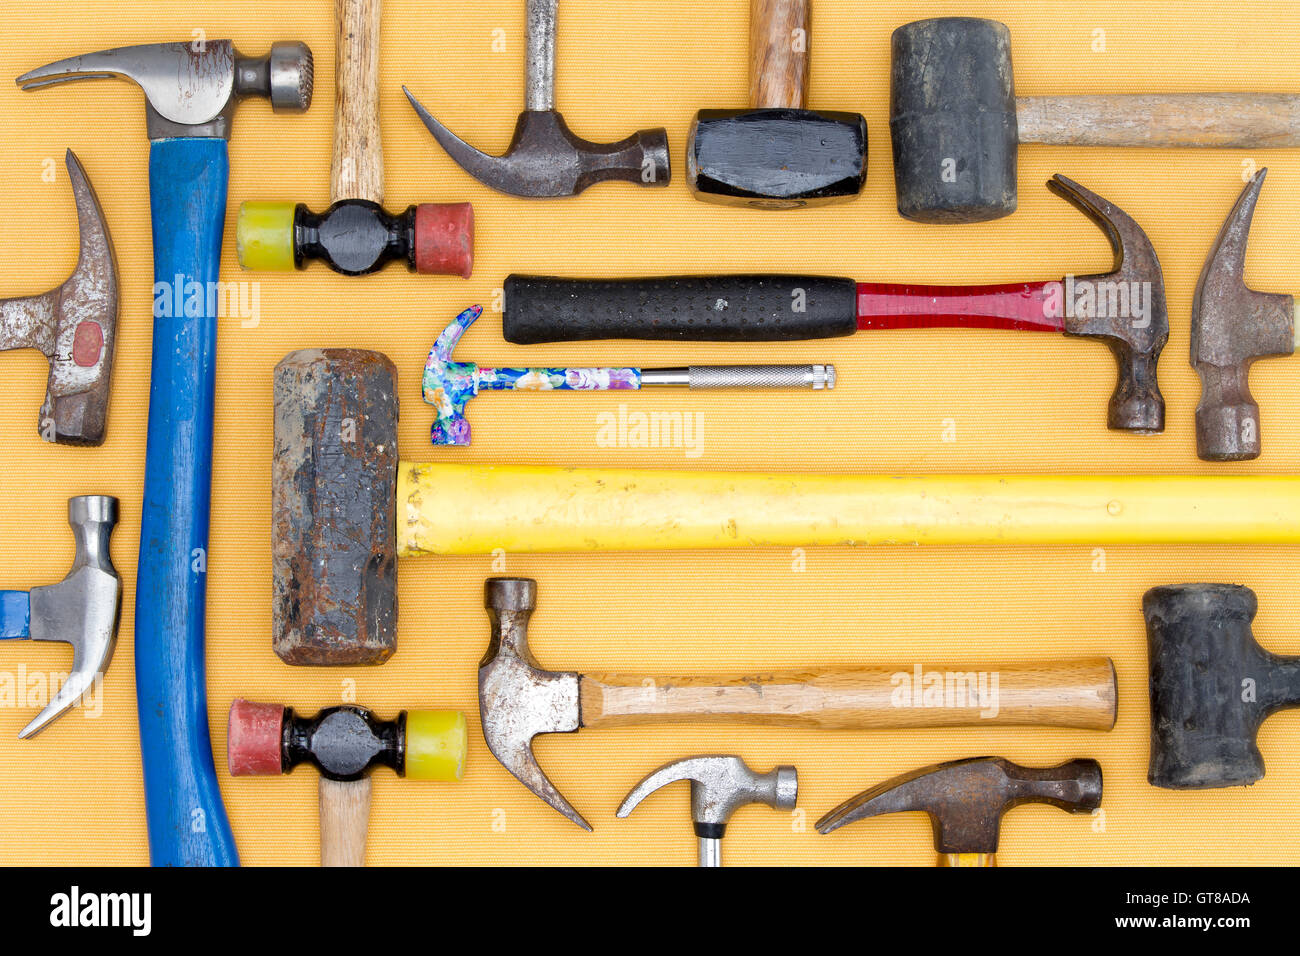 Affichage d'une diversité des marteaux dans une trousse d'outils pour le bricolage, menuiserie, construction, maillets et une masse dans une arrangeme Banque D'Images